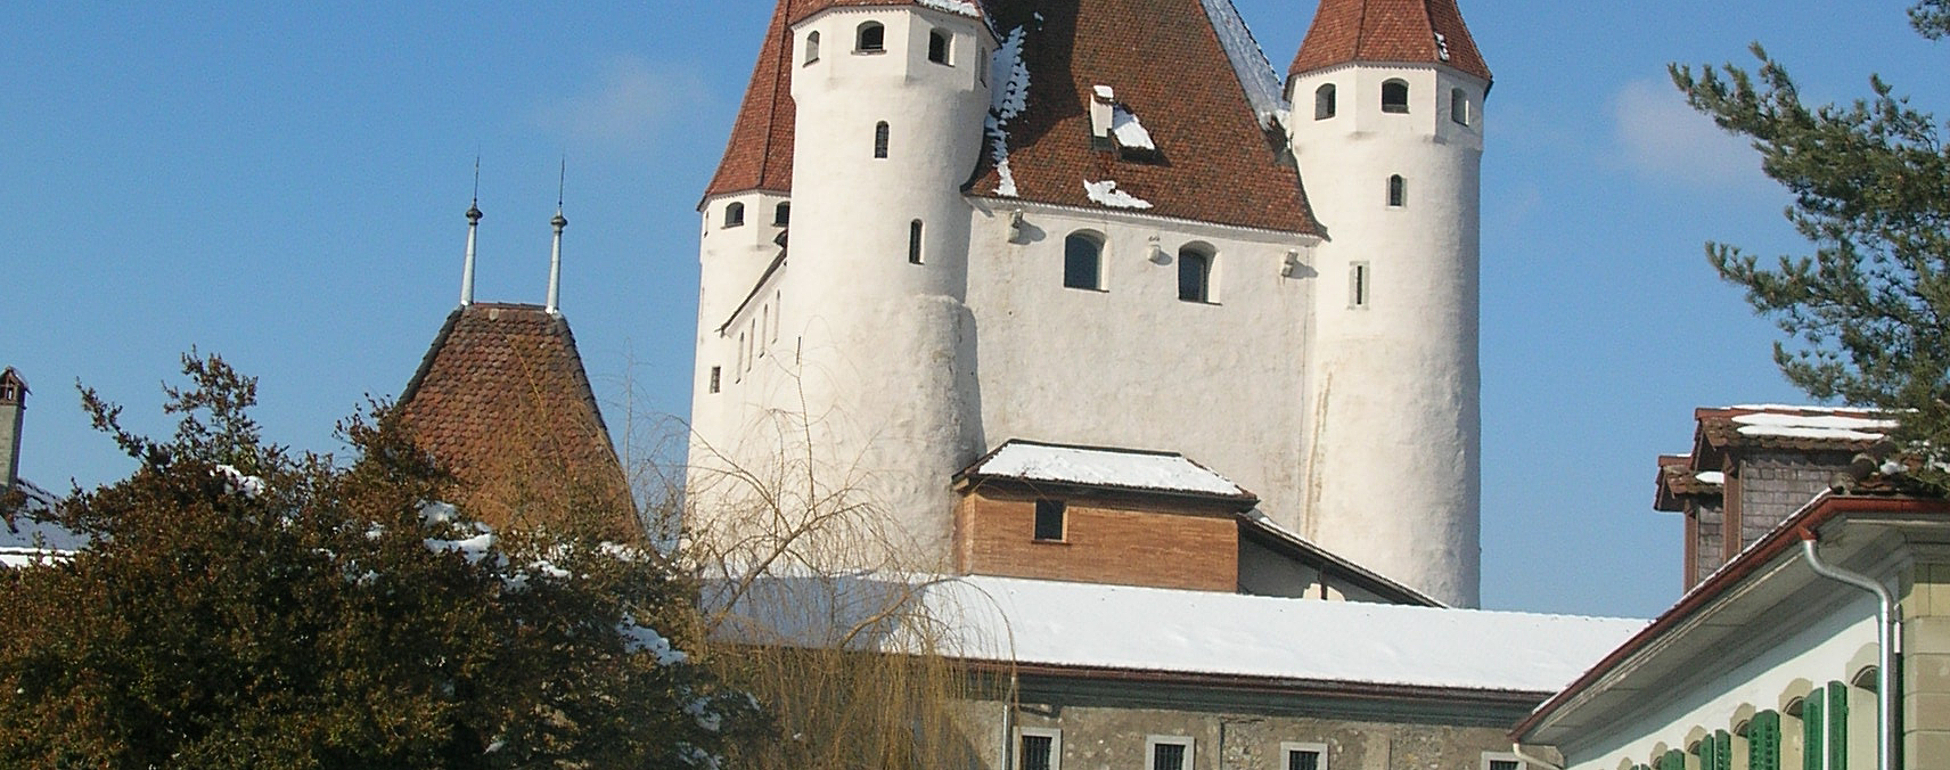 Château de Thoune